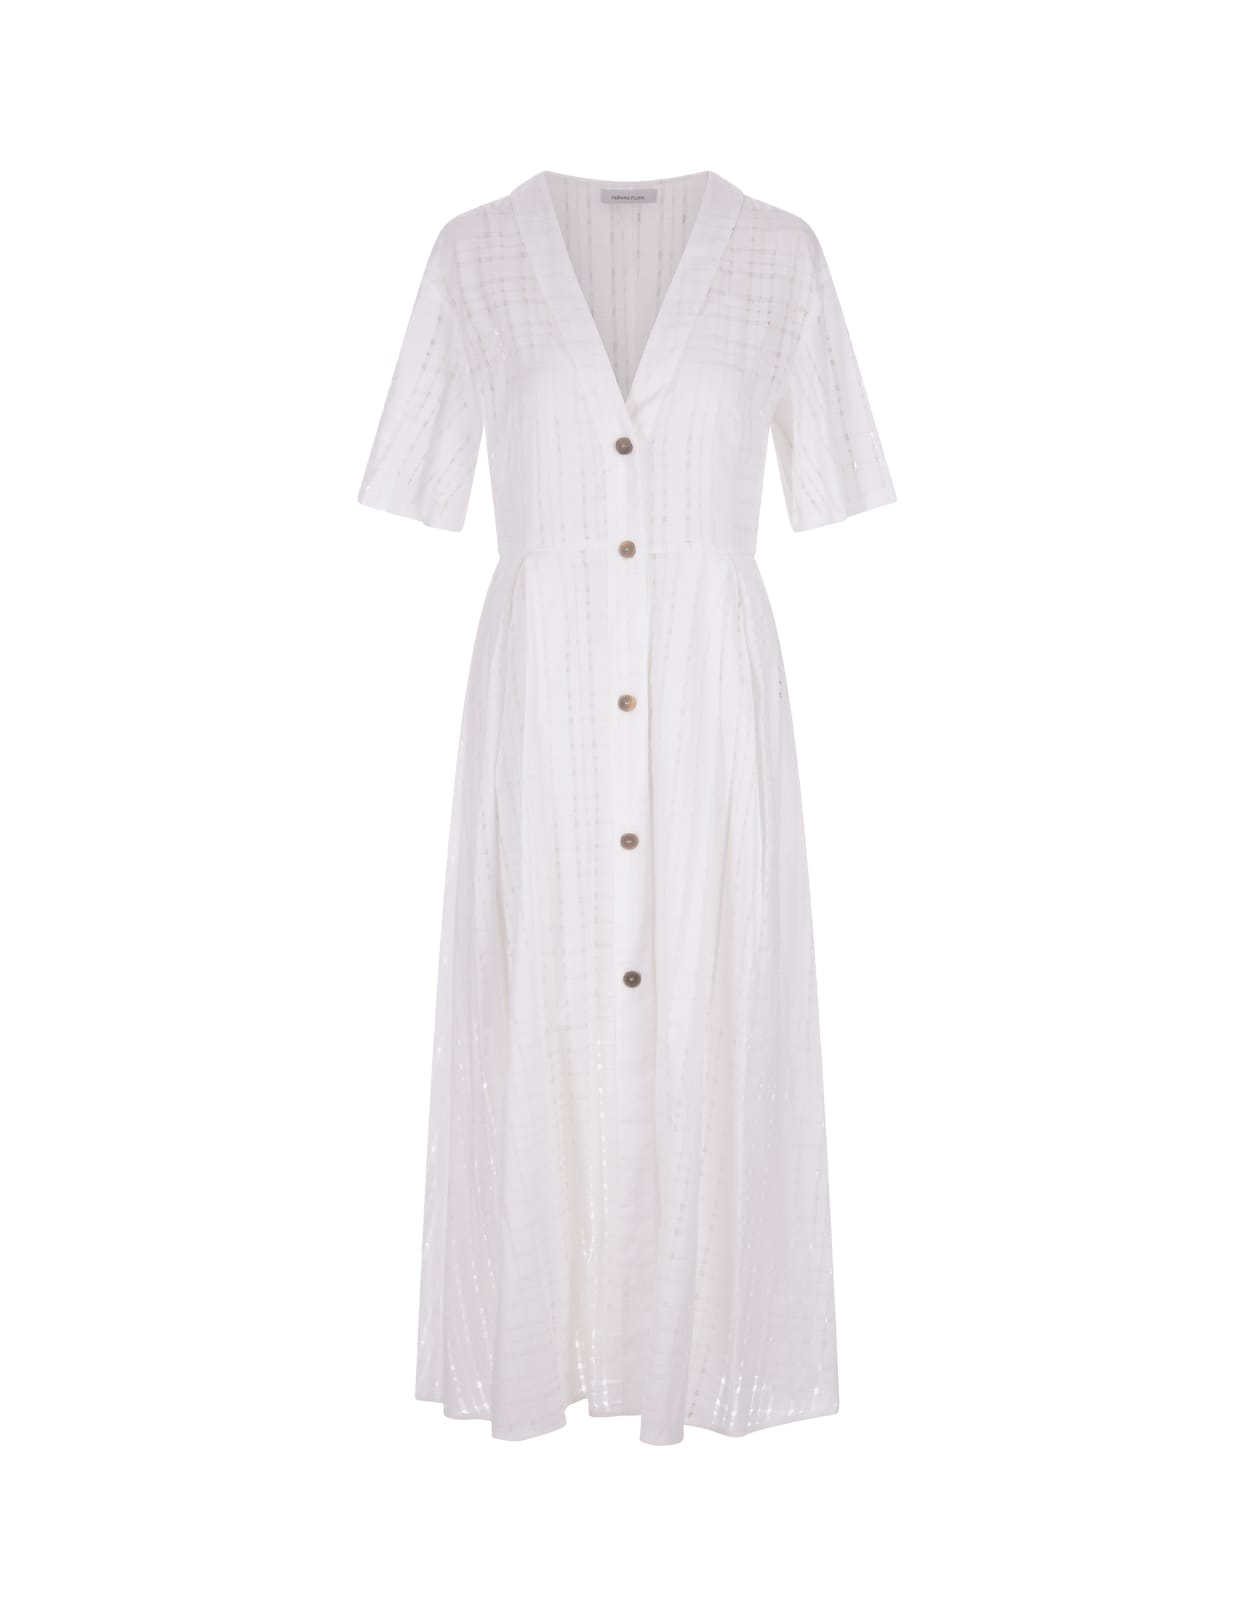 Fabiana Filippi White Linen Midi Shirt Dress